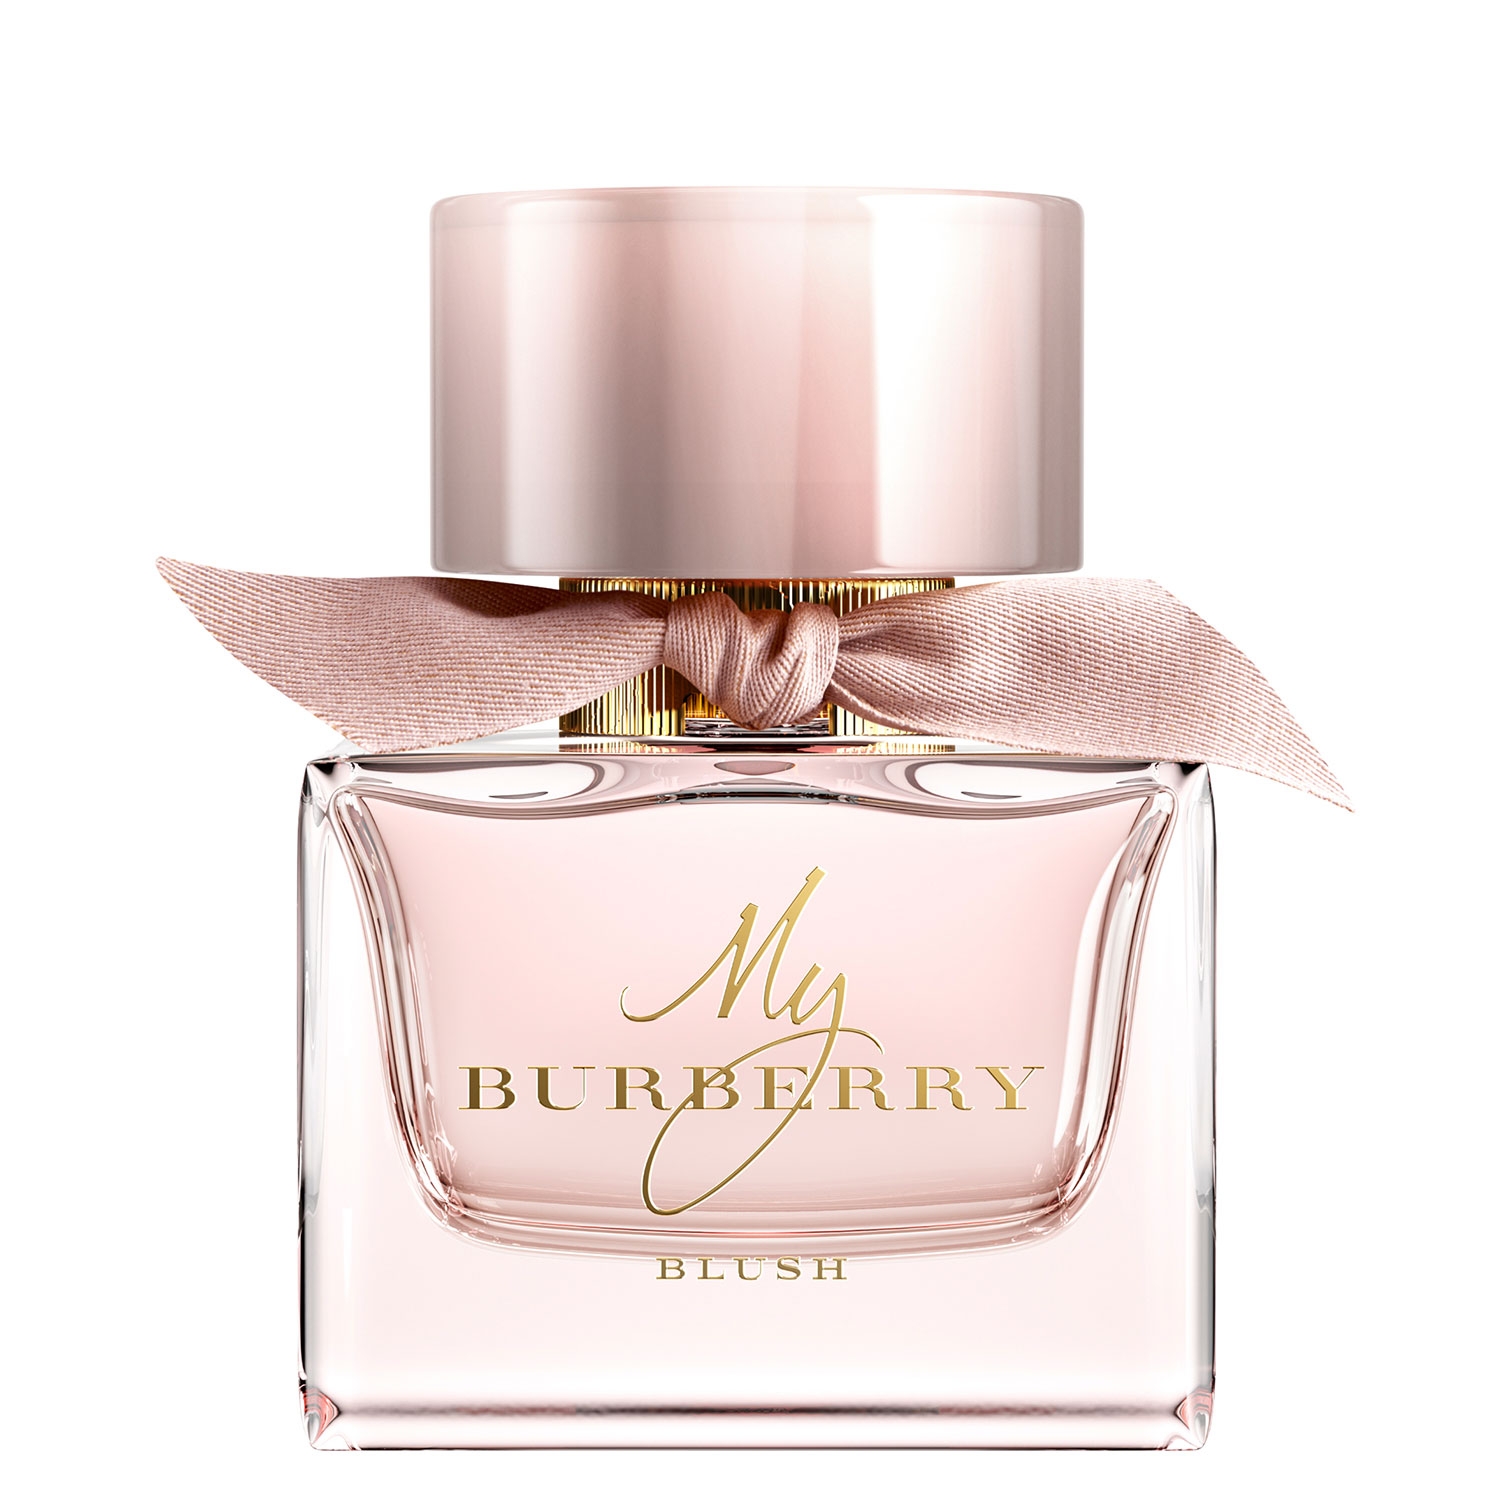 Product image from My Burberry - Blush Eau de Parfum